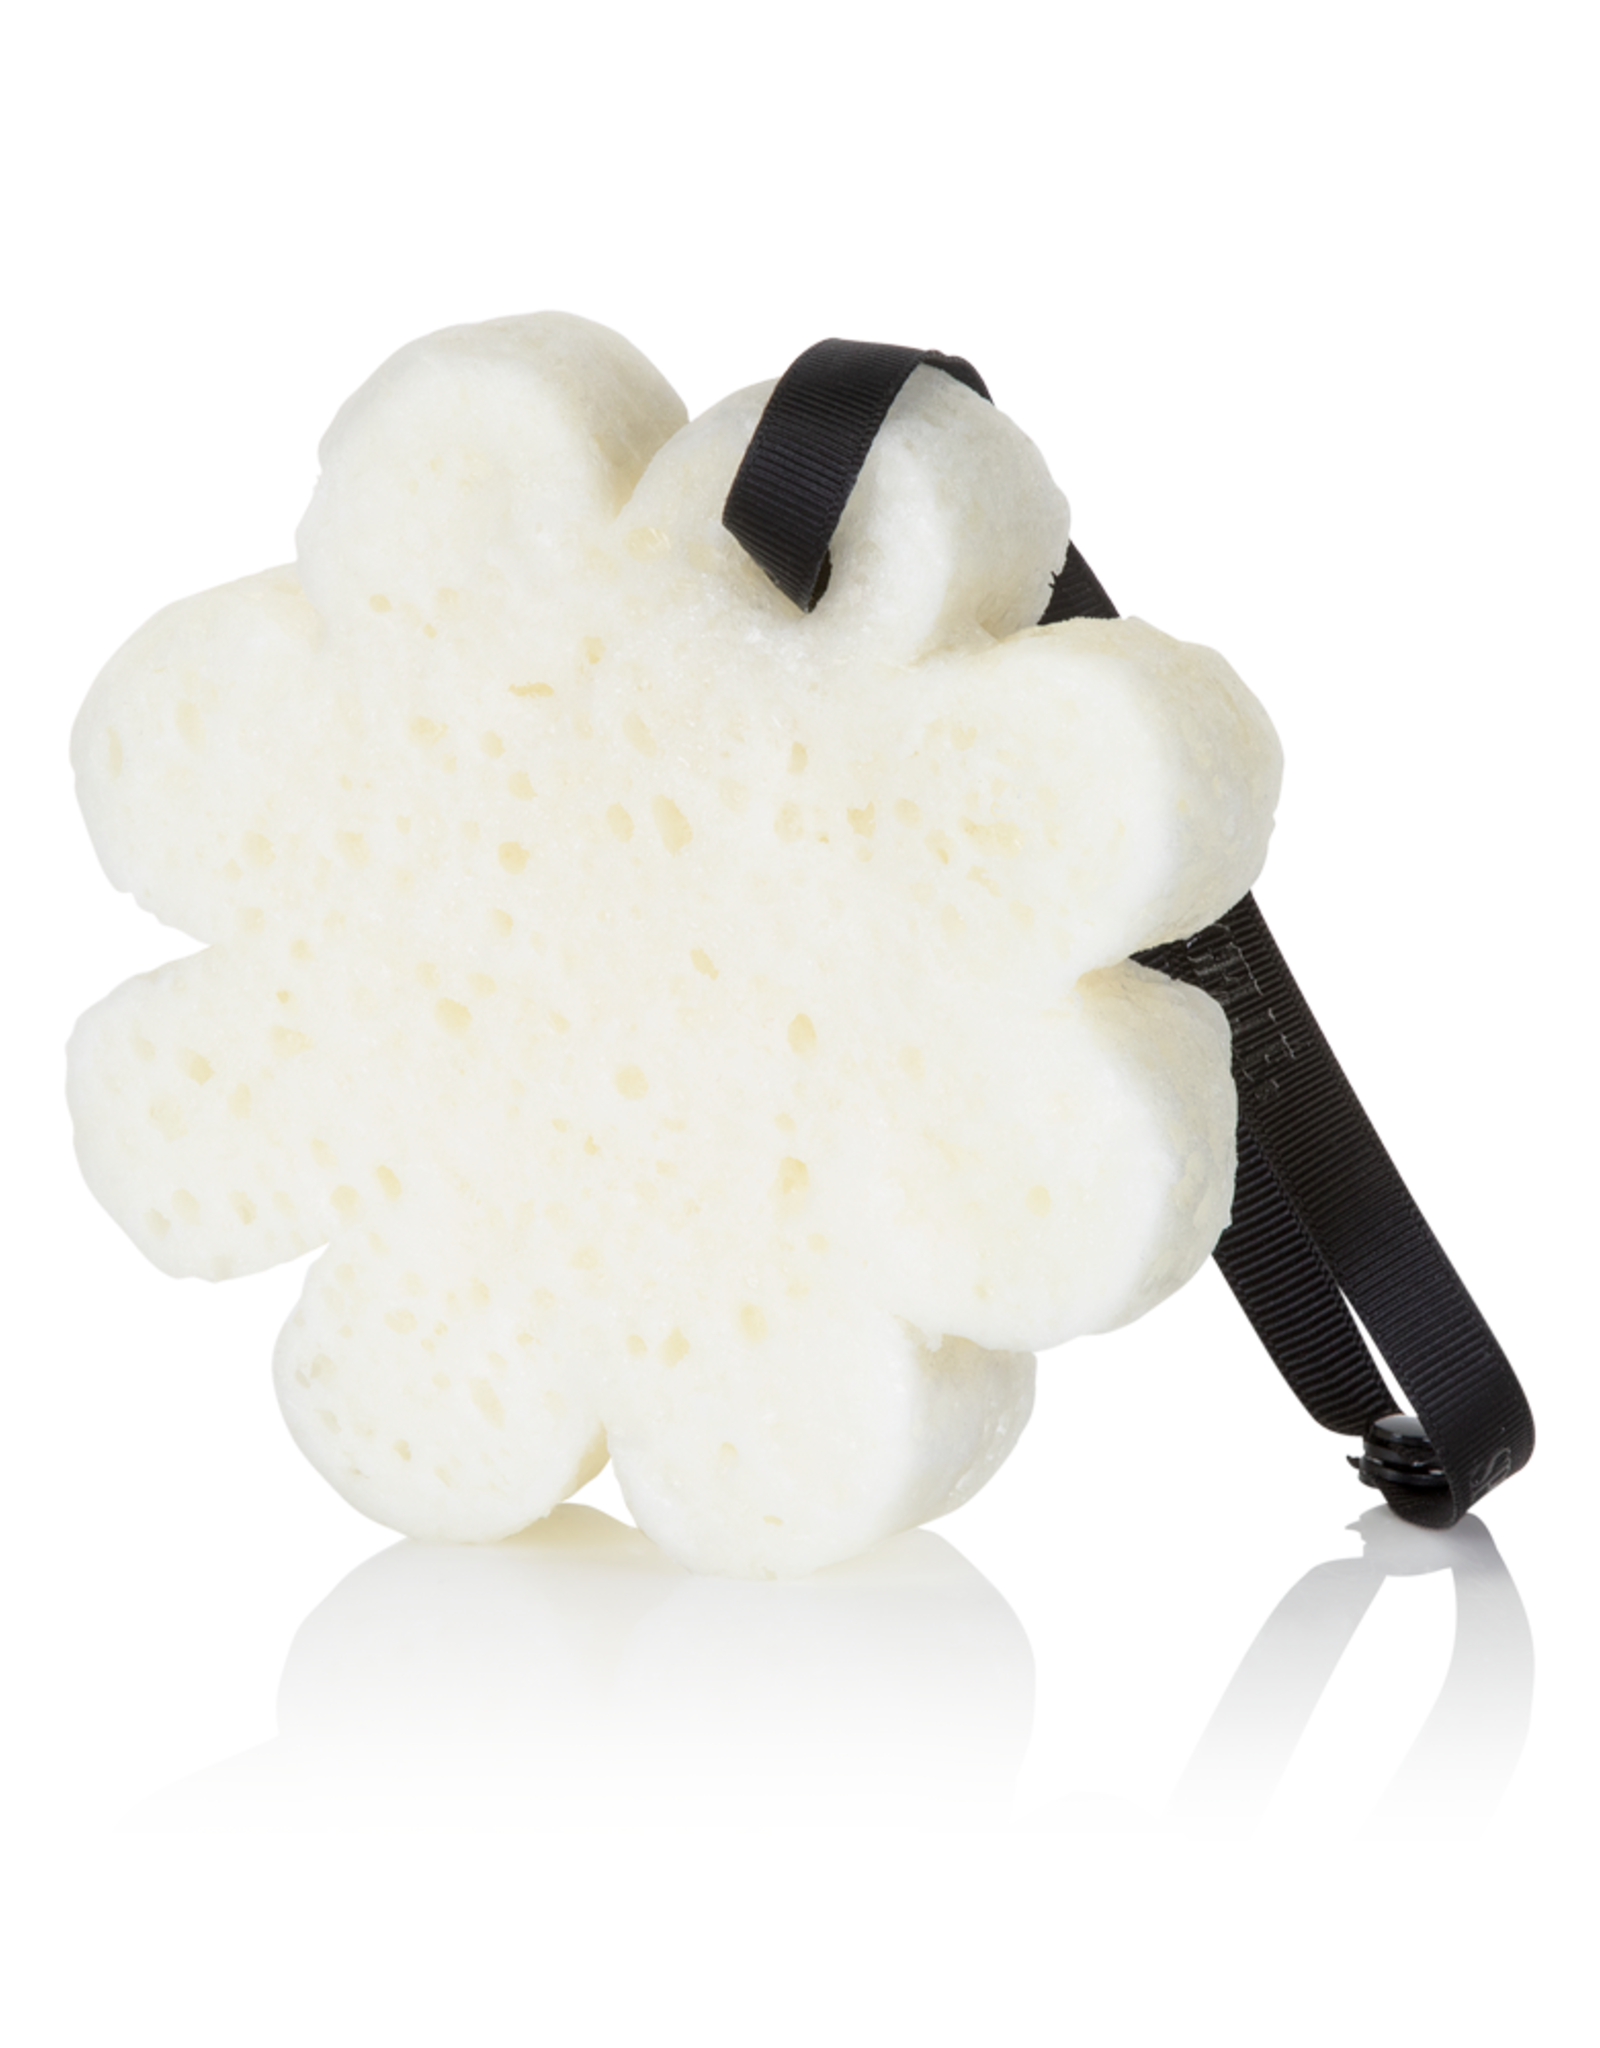 Spongelle' Spongelle Boxed White Flower Sugar Crush